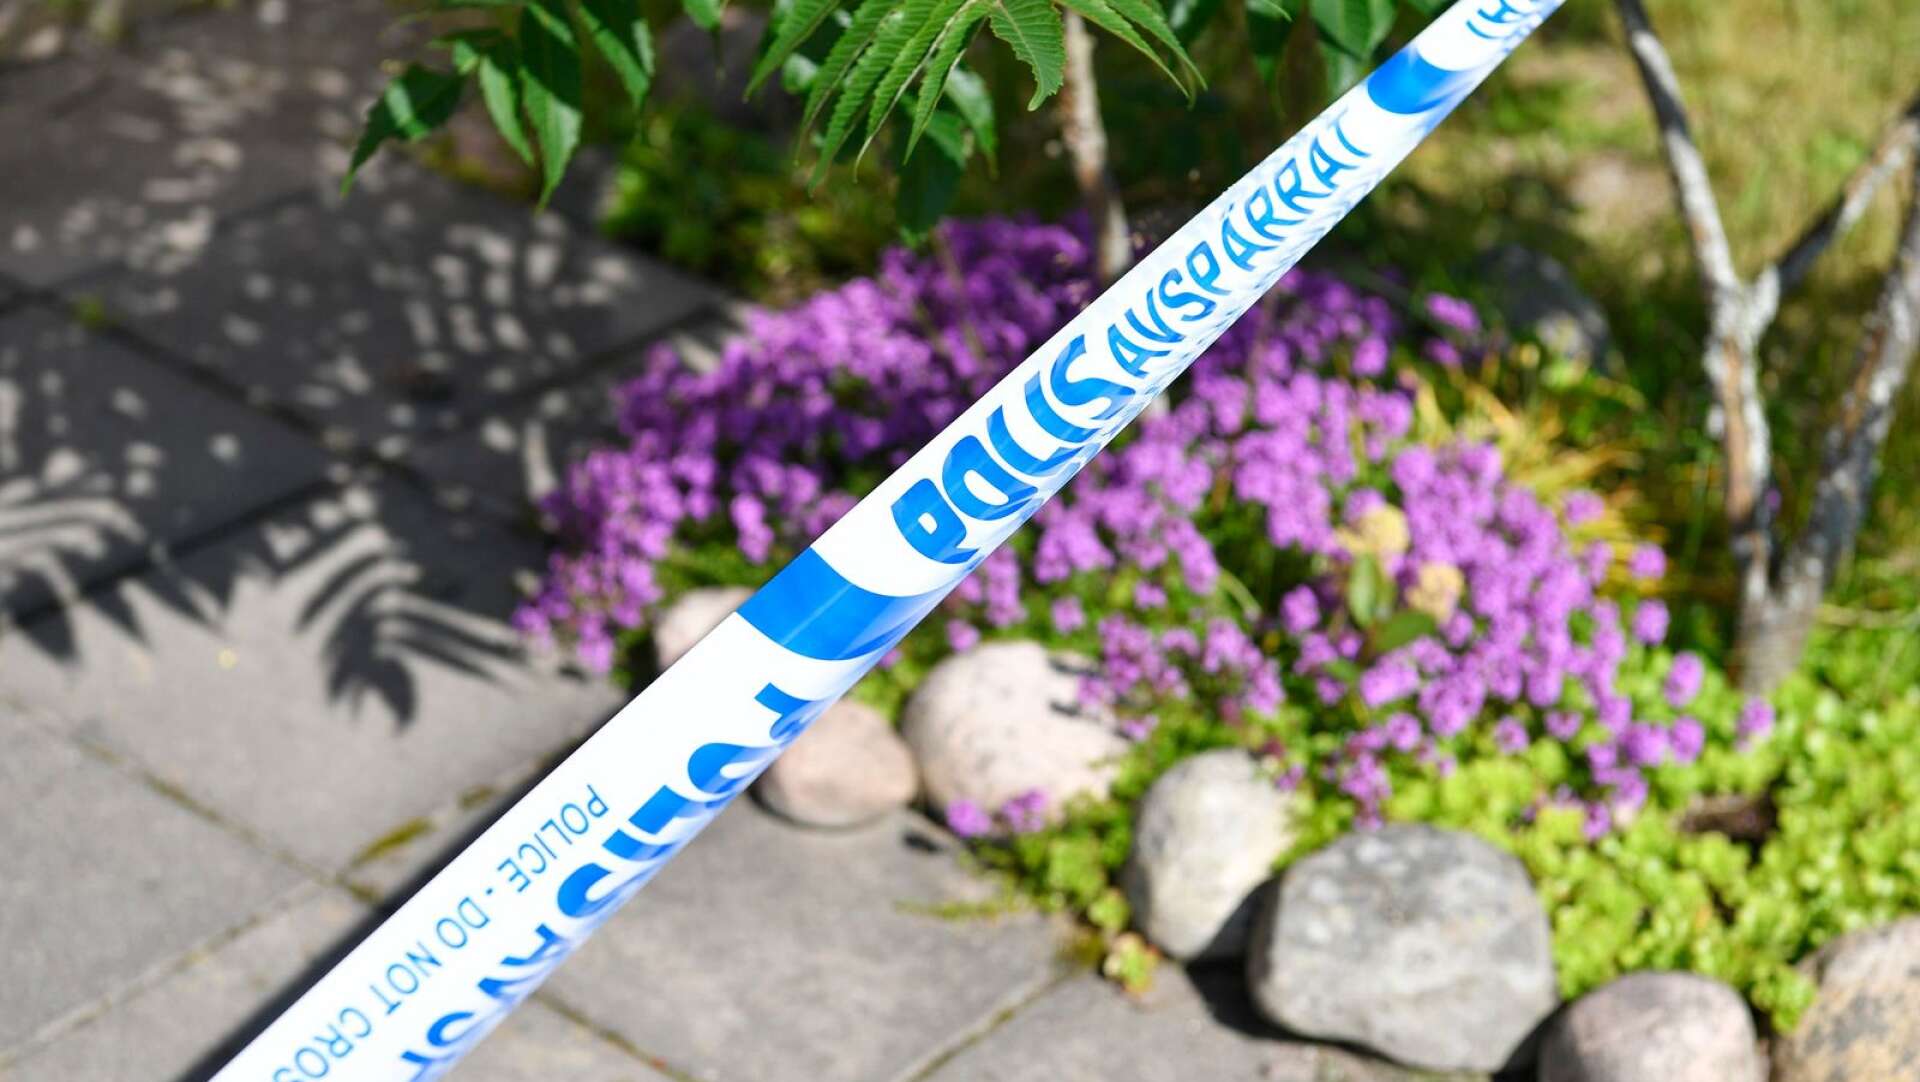 Det var i slutet av juni som en 69-årig kvinna hittades mördad i sitt eget hem i Kil. 